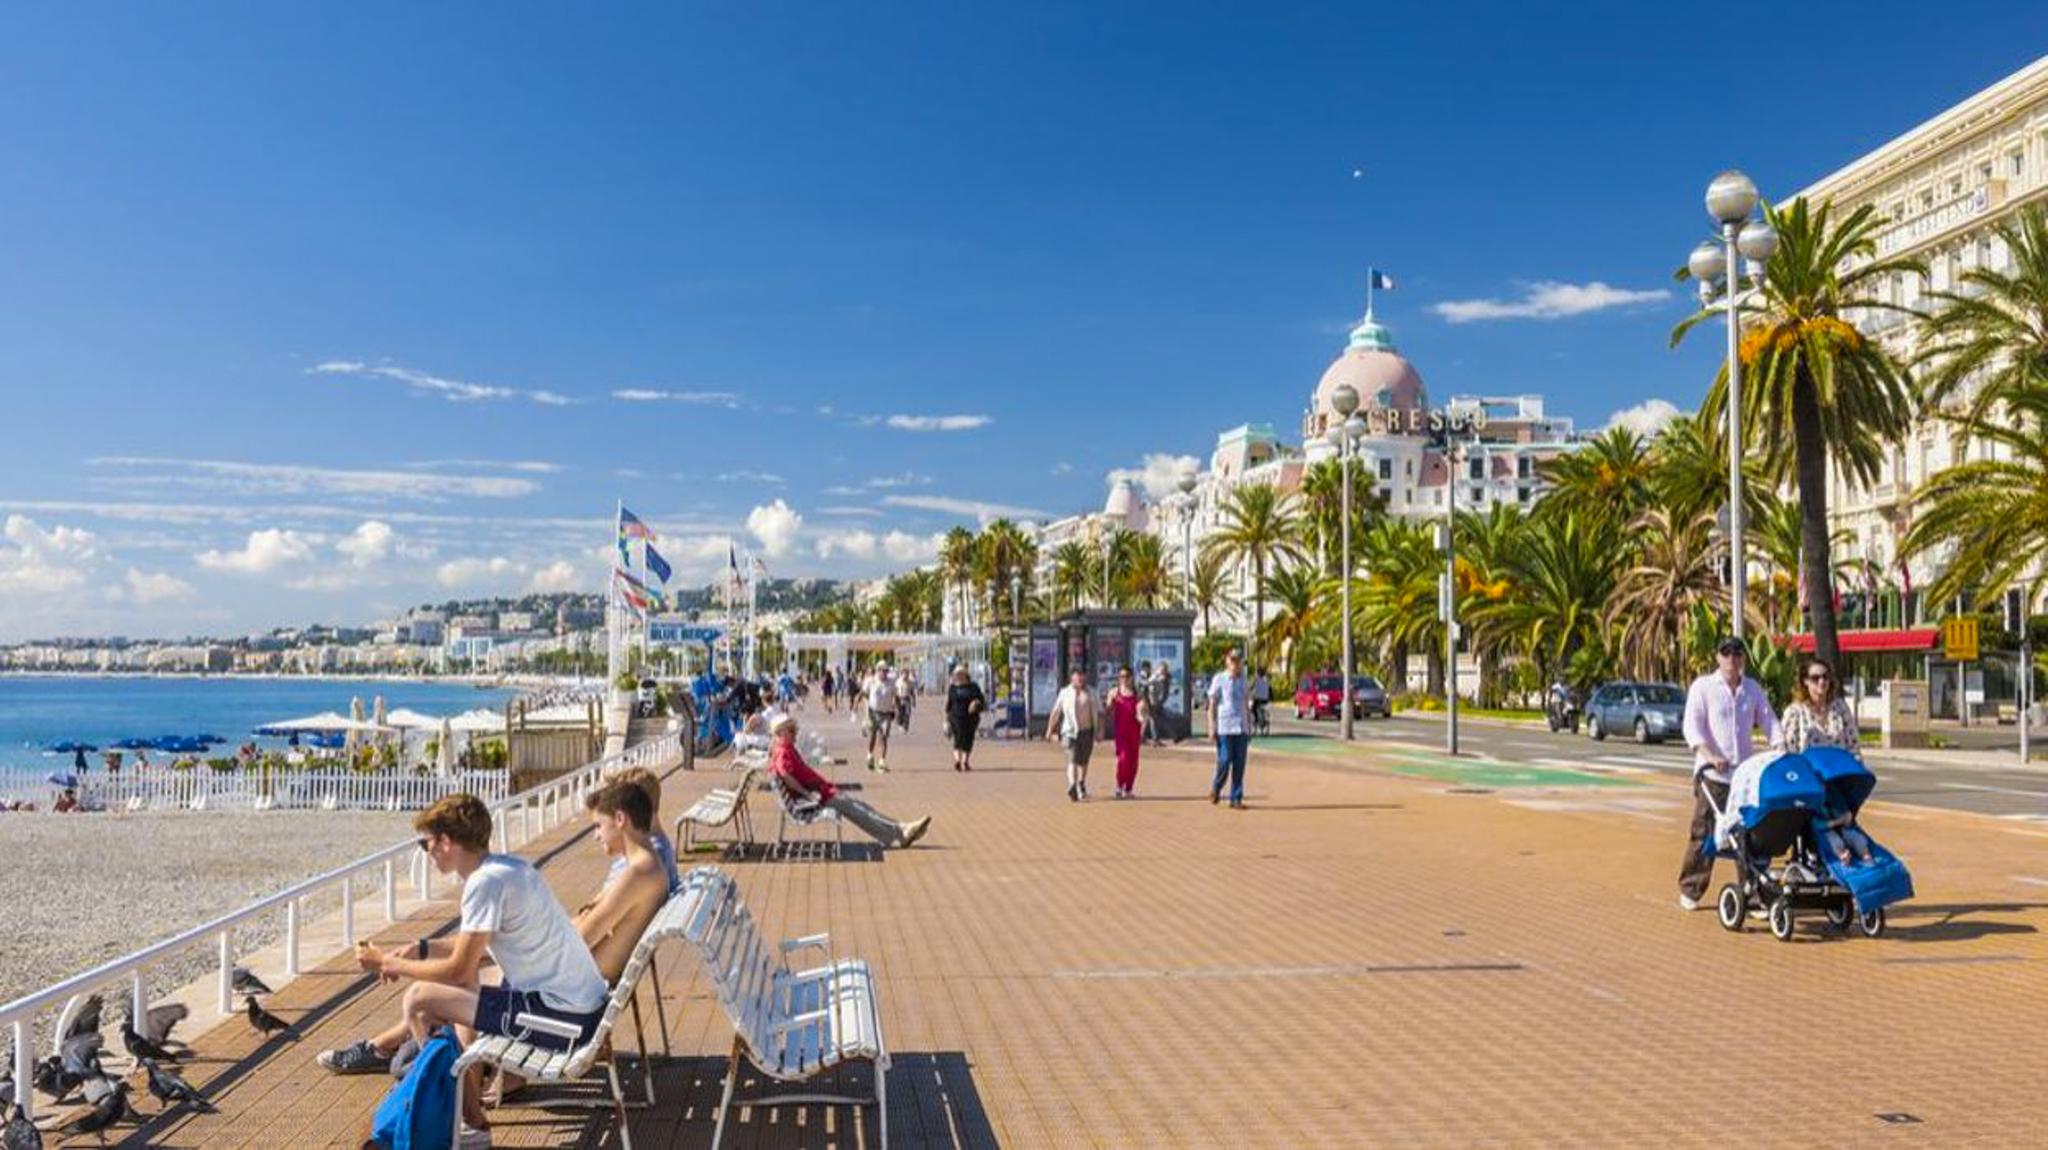 The Promenade des Anglais